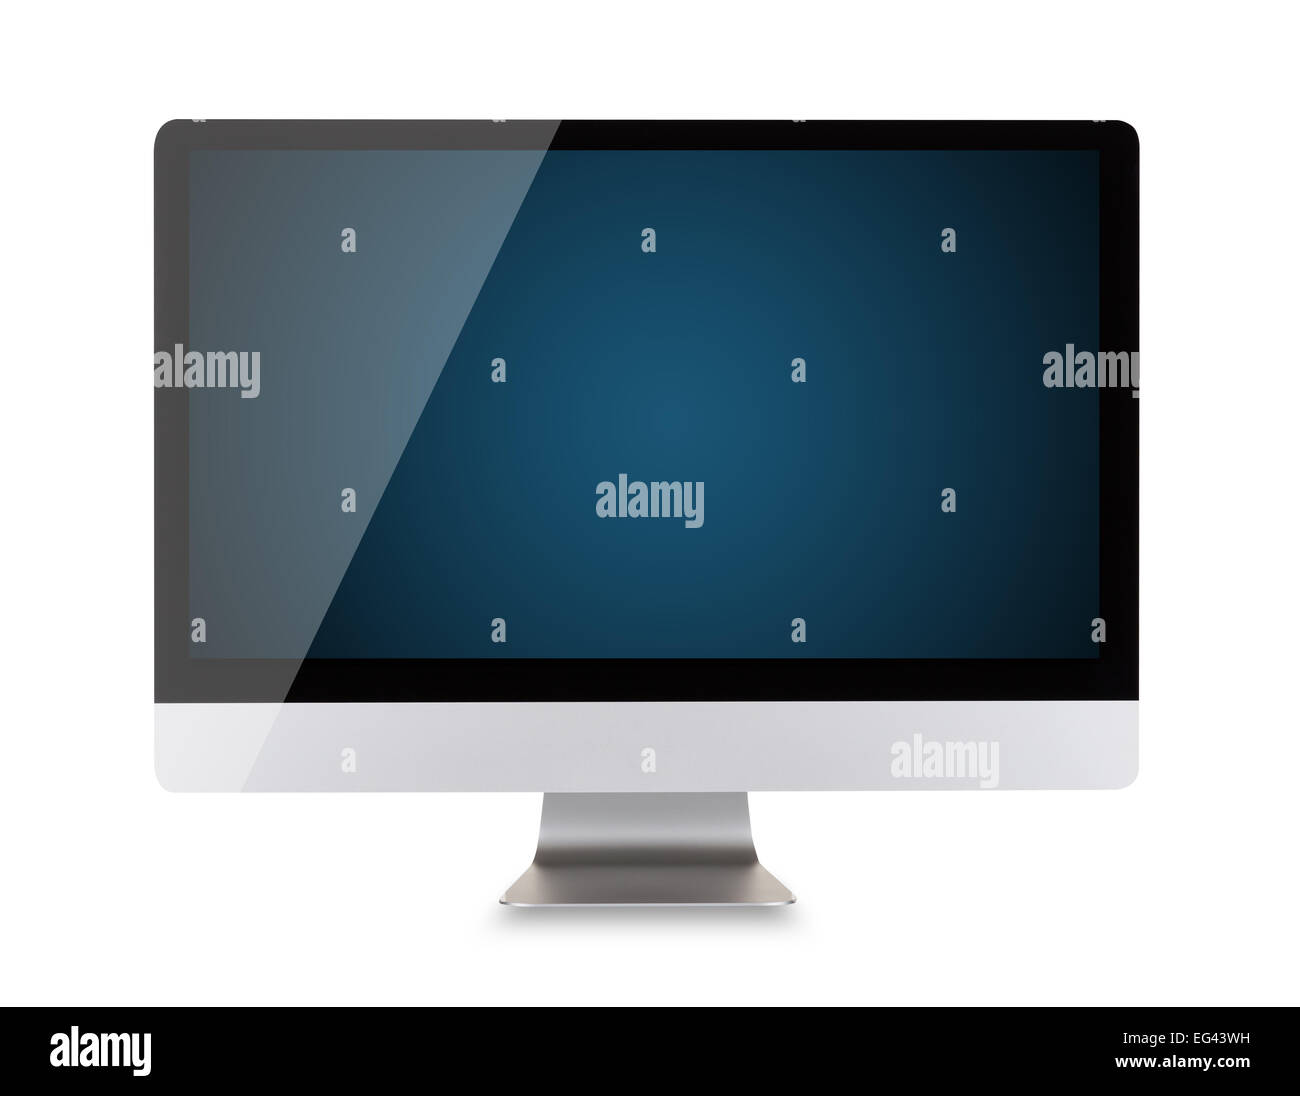 Affichage de l'ordinateur moderne avec écran bleu foncé blanc, souris et clavier. Vue de face. Isolé sur fond blanc Banque D'Images